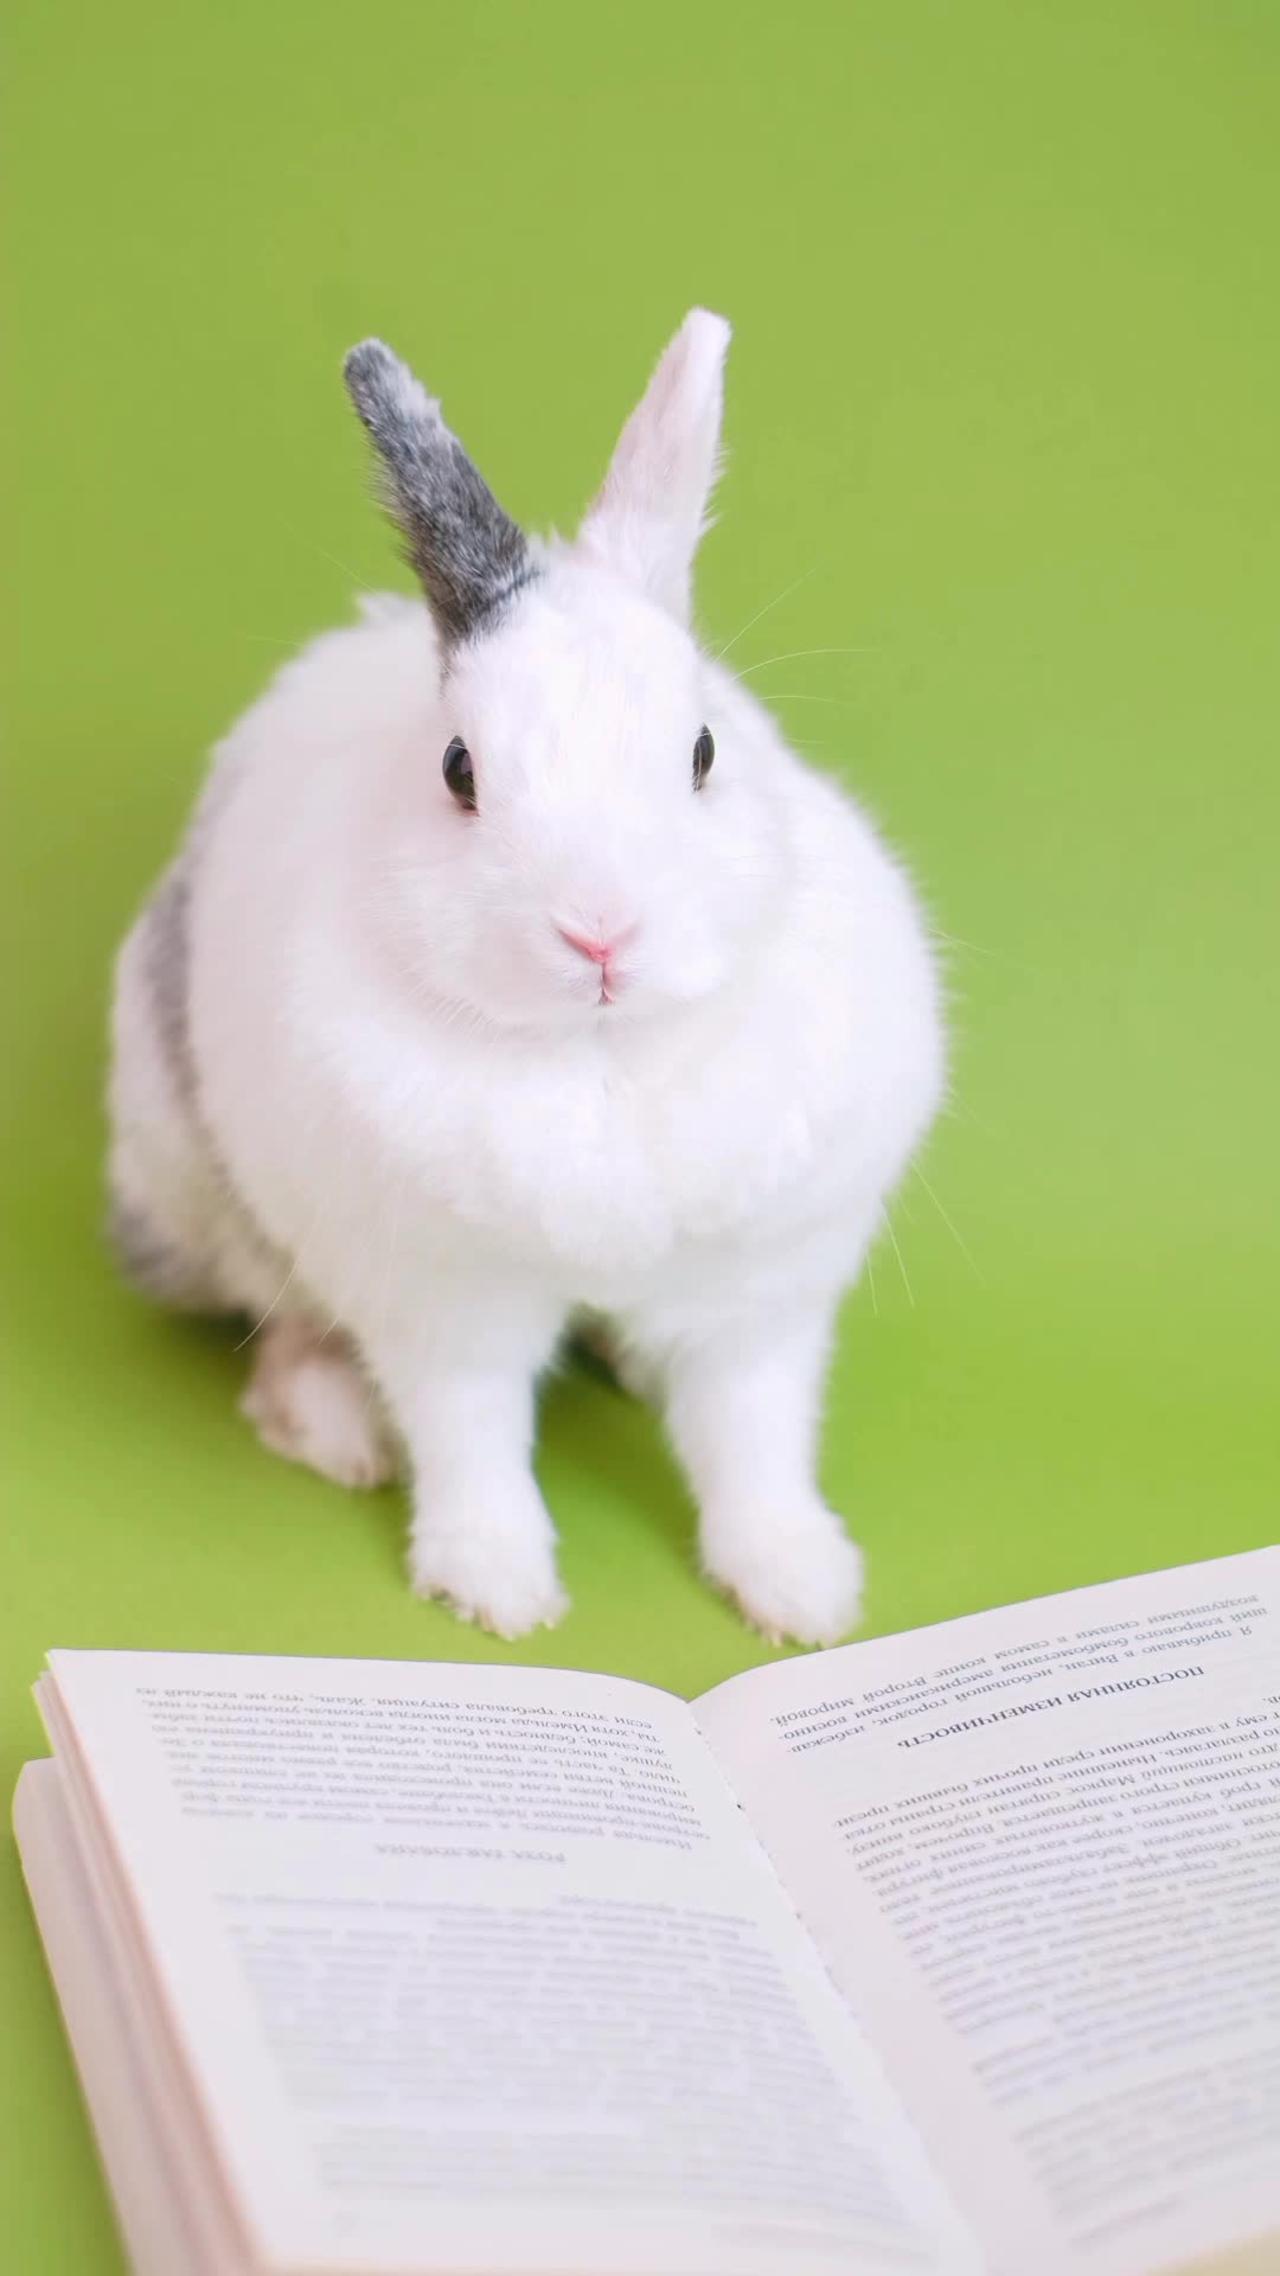 Animal sound(Rabbit) rabbit sound effect